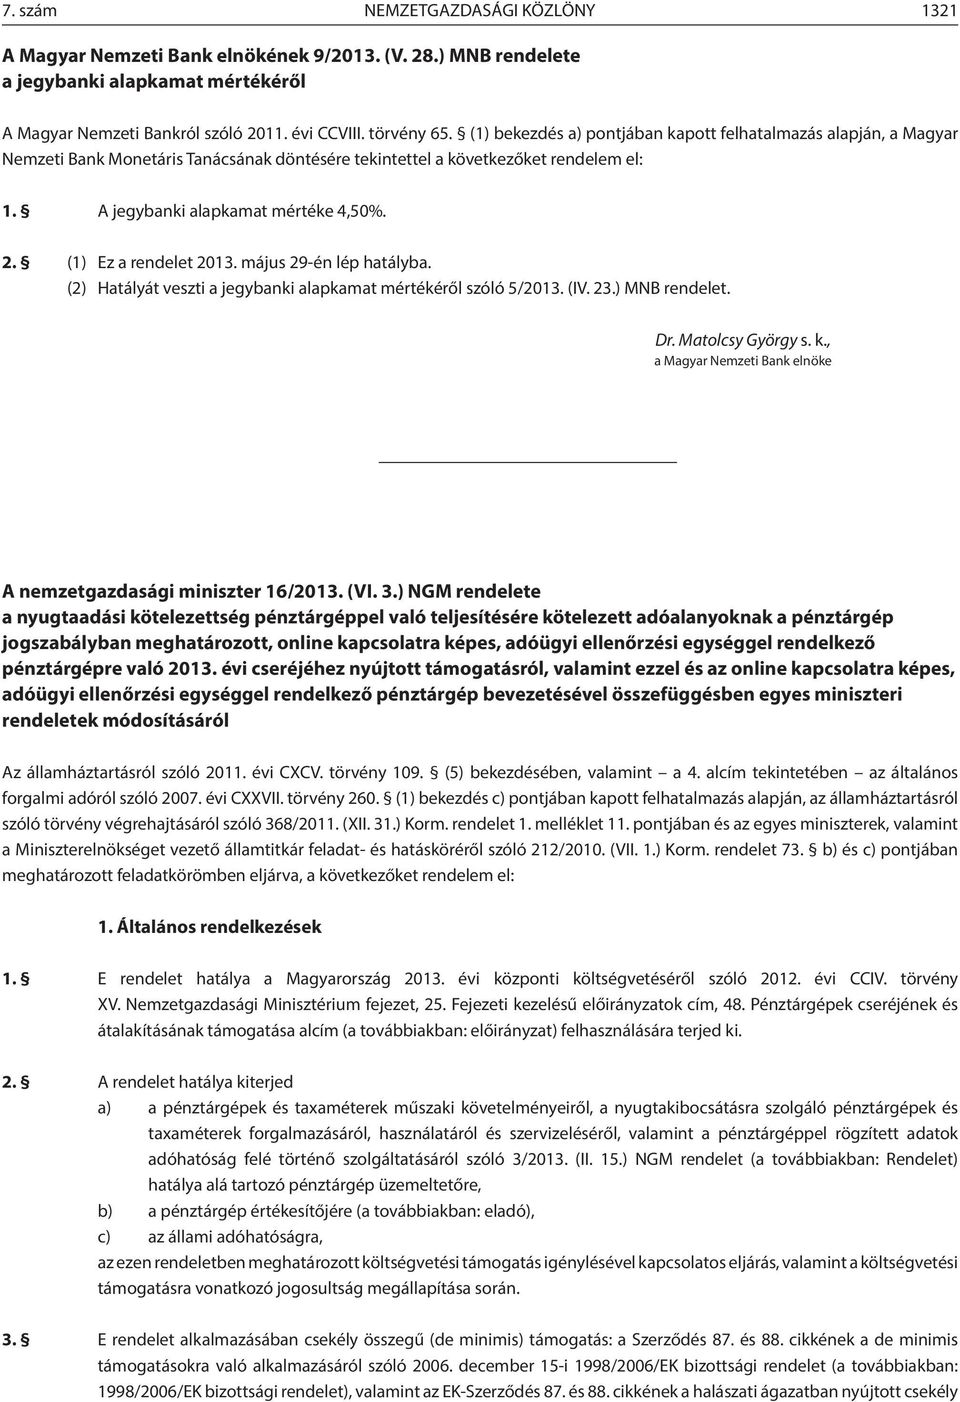 (1) Ez a rendelet 2013. május 29-én lép hatályba. (2) Hatályát veszti a jegybanki alapkamat mértékéről szóló 5/2013. (IV. 23.) MNB rendelet. Dr. Matolcsy György s. k.